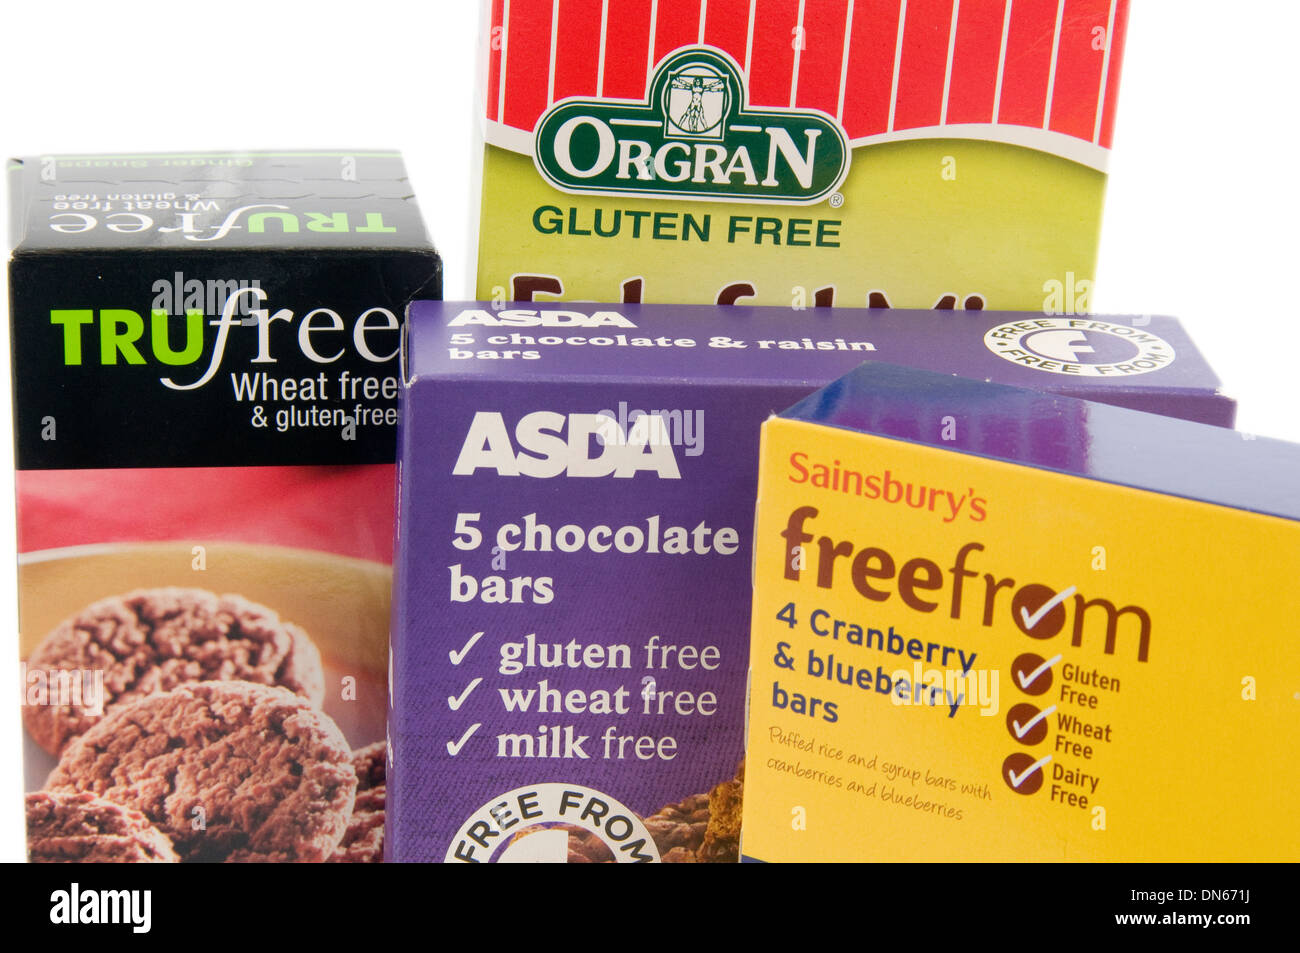 Selezione di prodotti senza glutine da UK supermercati Asda e Sainsbury's, nonché Trufree e organo i prodotti di marca. Foto Stock